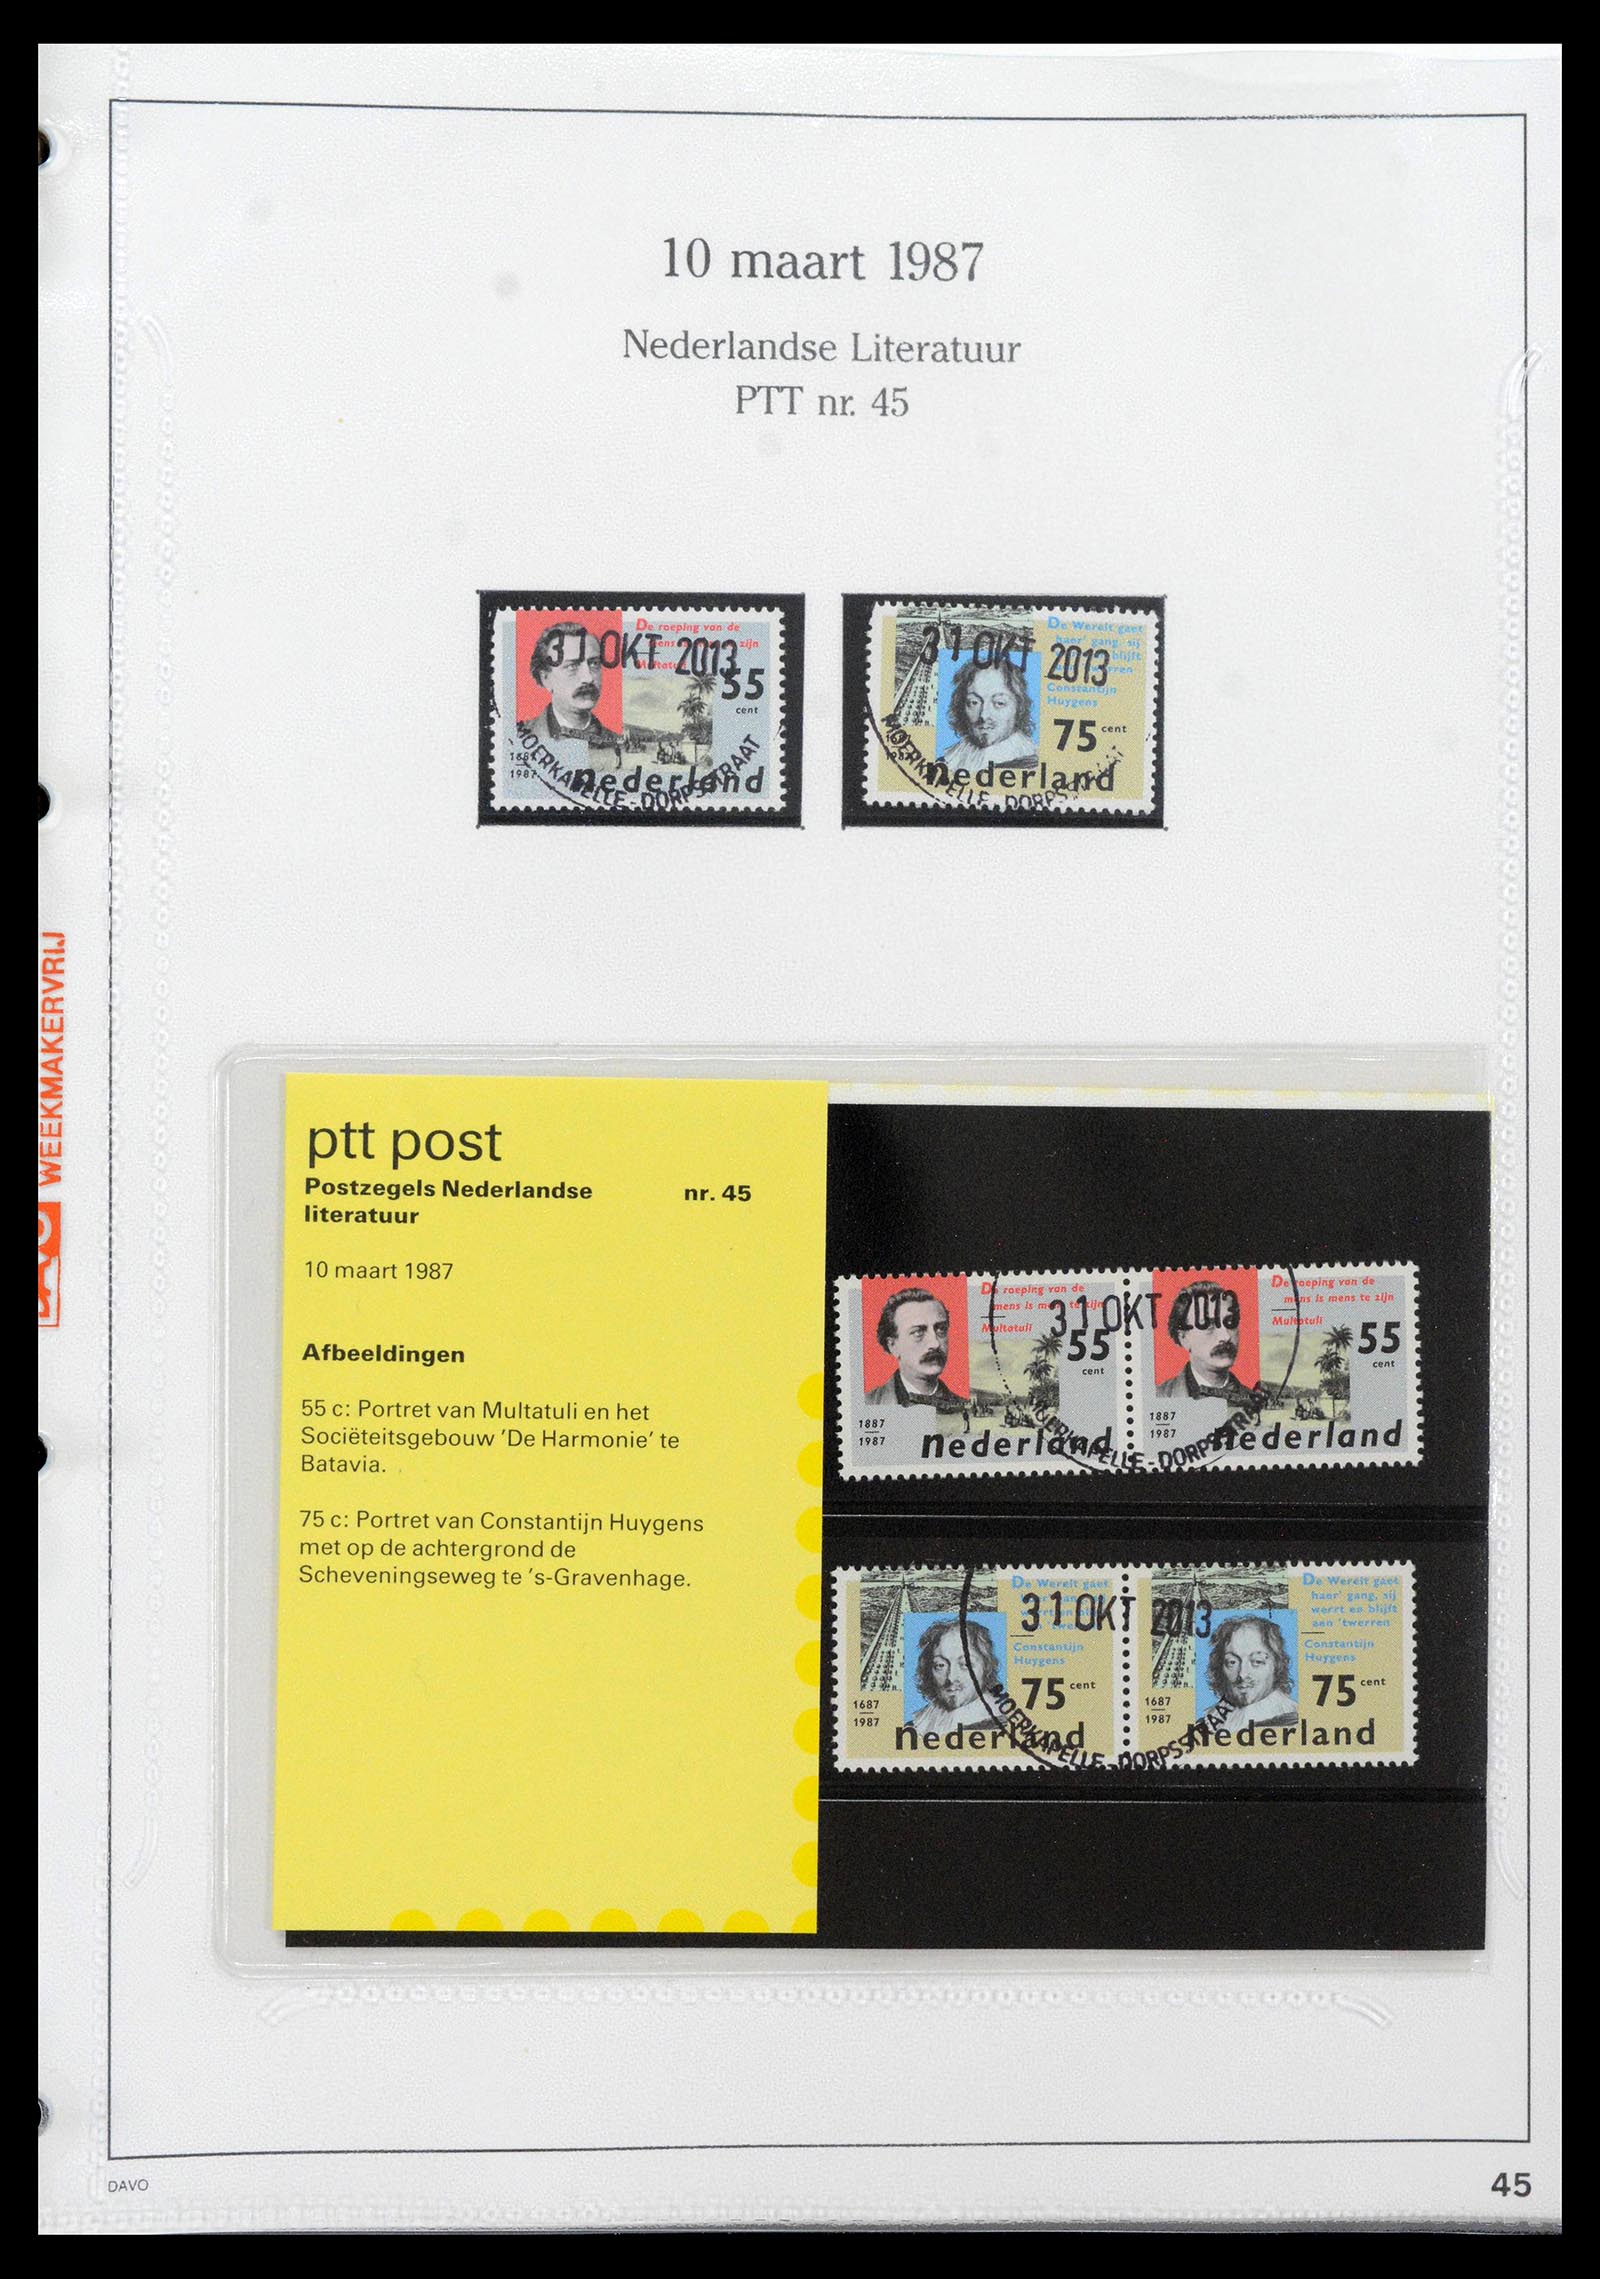 39121 0045 - Stamp collection 39121 Netherlands presentationpacks 1982-2001.